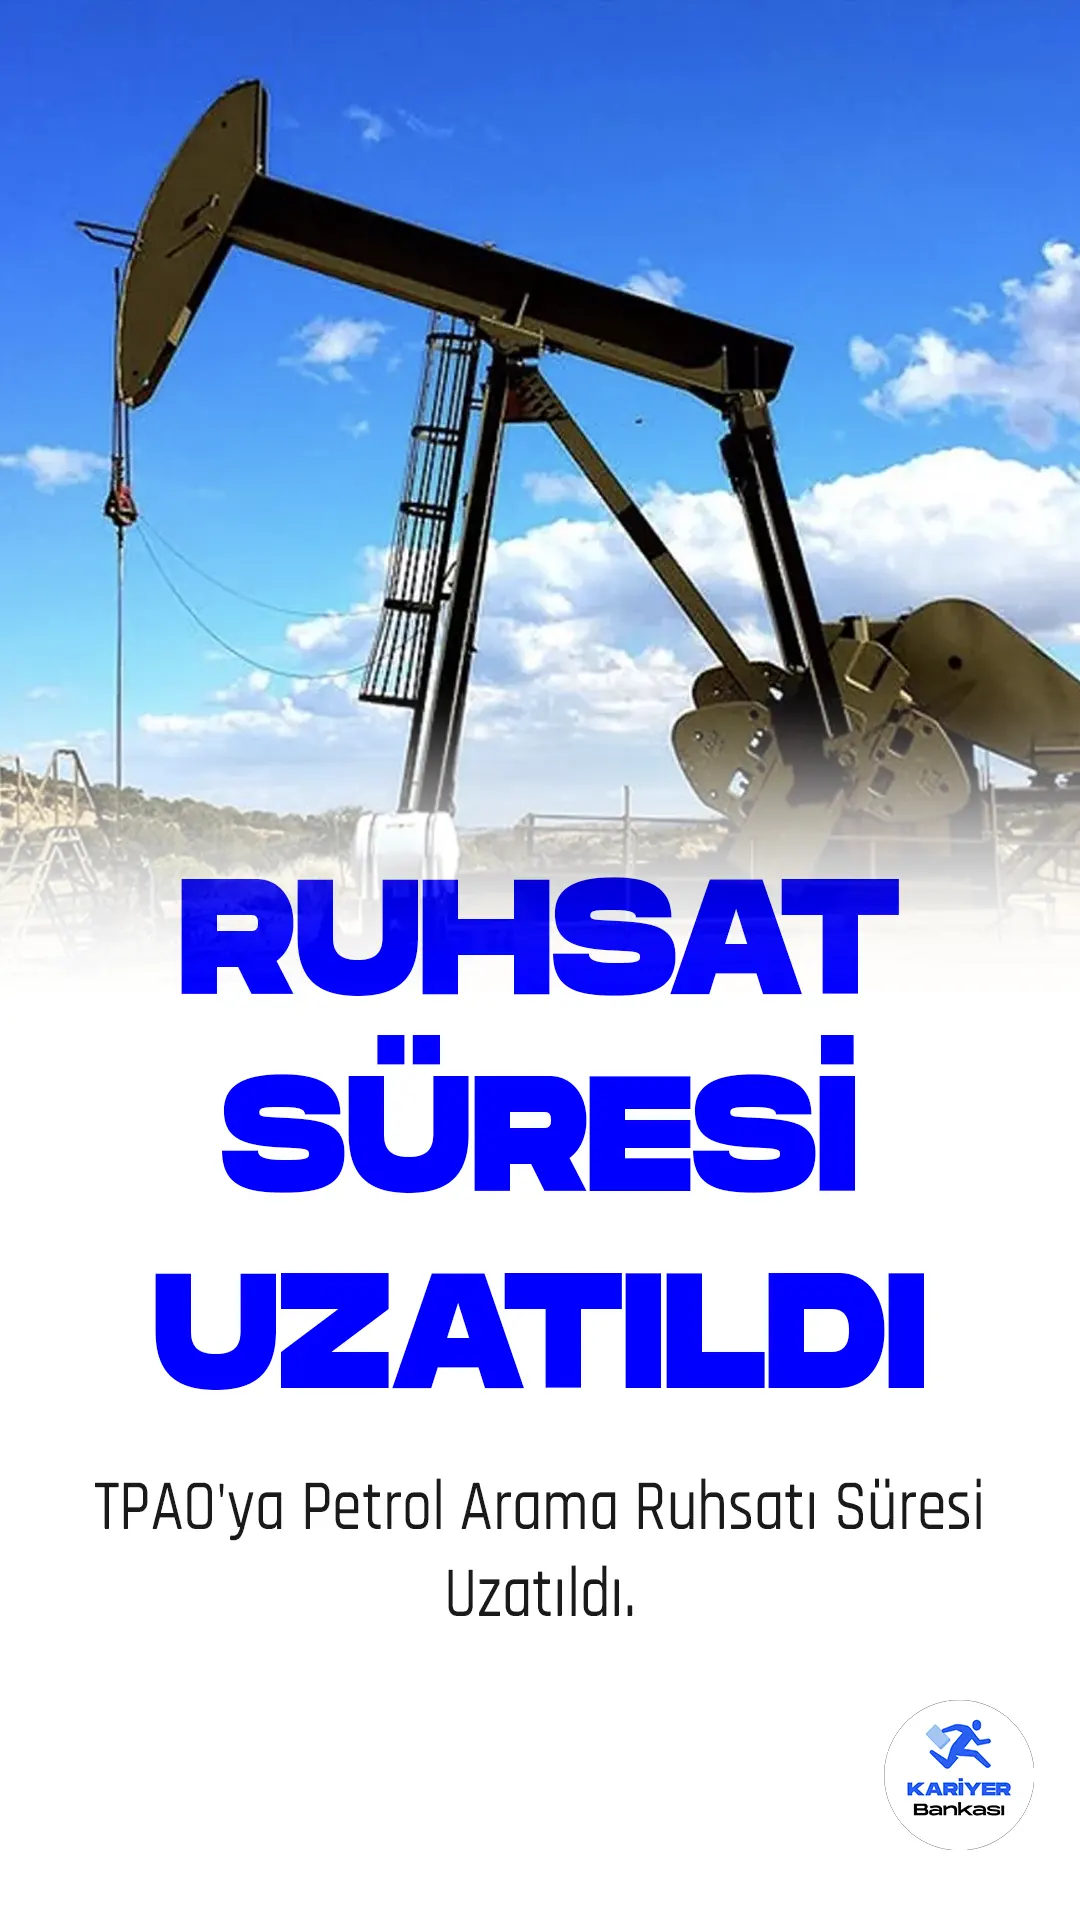 TPAO'ya Petrol Arama Ruhsatı Süresi Uzatıldı.Türkiye Petrolleri Anonim Ortaklığı (TPAO), petrol arama faaliyetleri kapsamında Siirt, Şırnak ve Adana illerindeki 77 bin 247 hektarlık alanda ruhsat süresini 2 yıl uzattı. Enerji ve Tabii Kaynaklar Bakanlığı Maden ve Petrol İşleri Genel Müdürlüğü, konuyla ilgili kararını Resmi Gazete'de yayımladı.